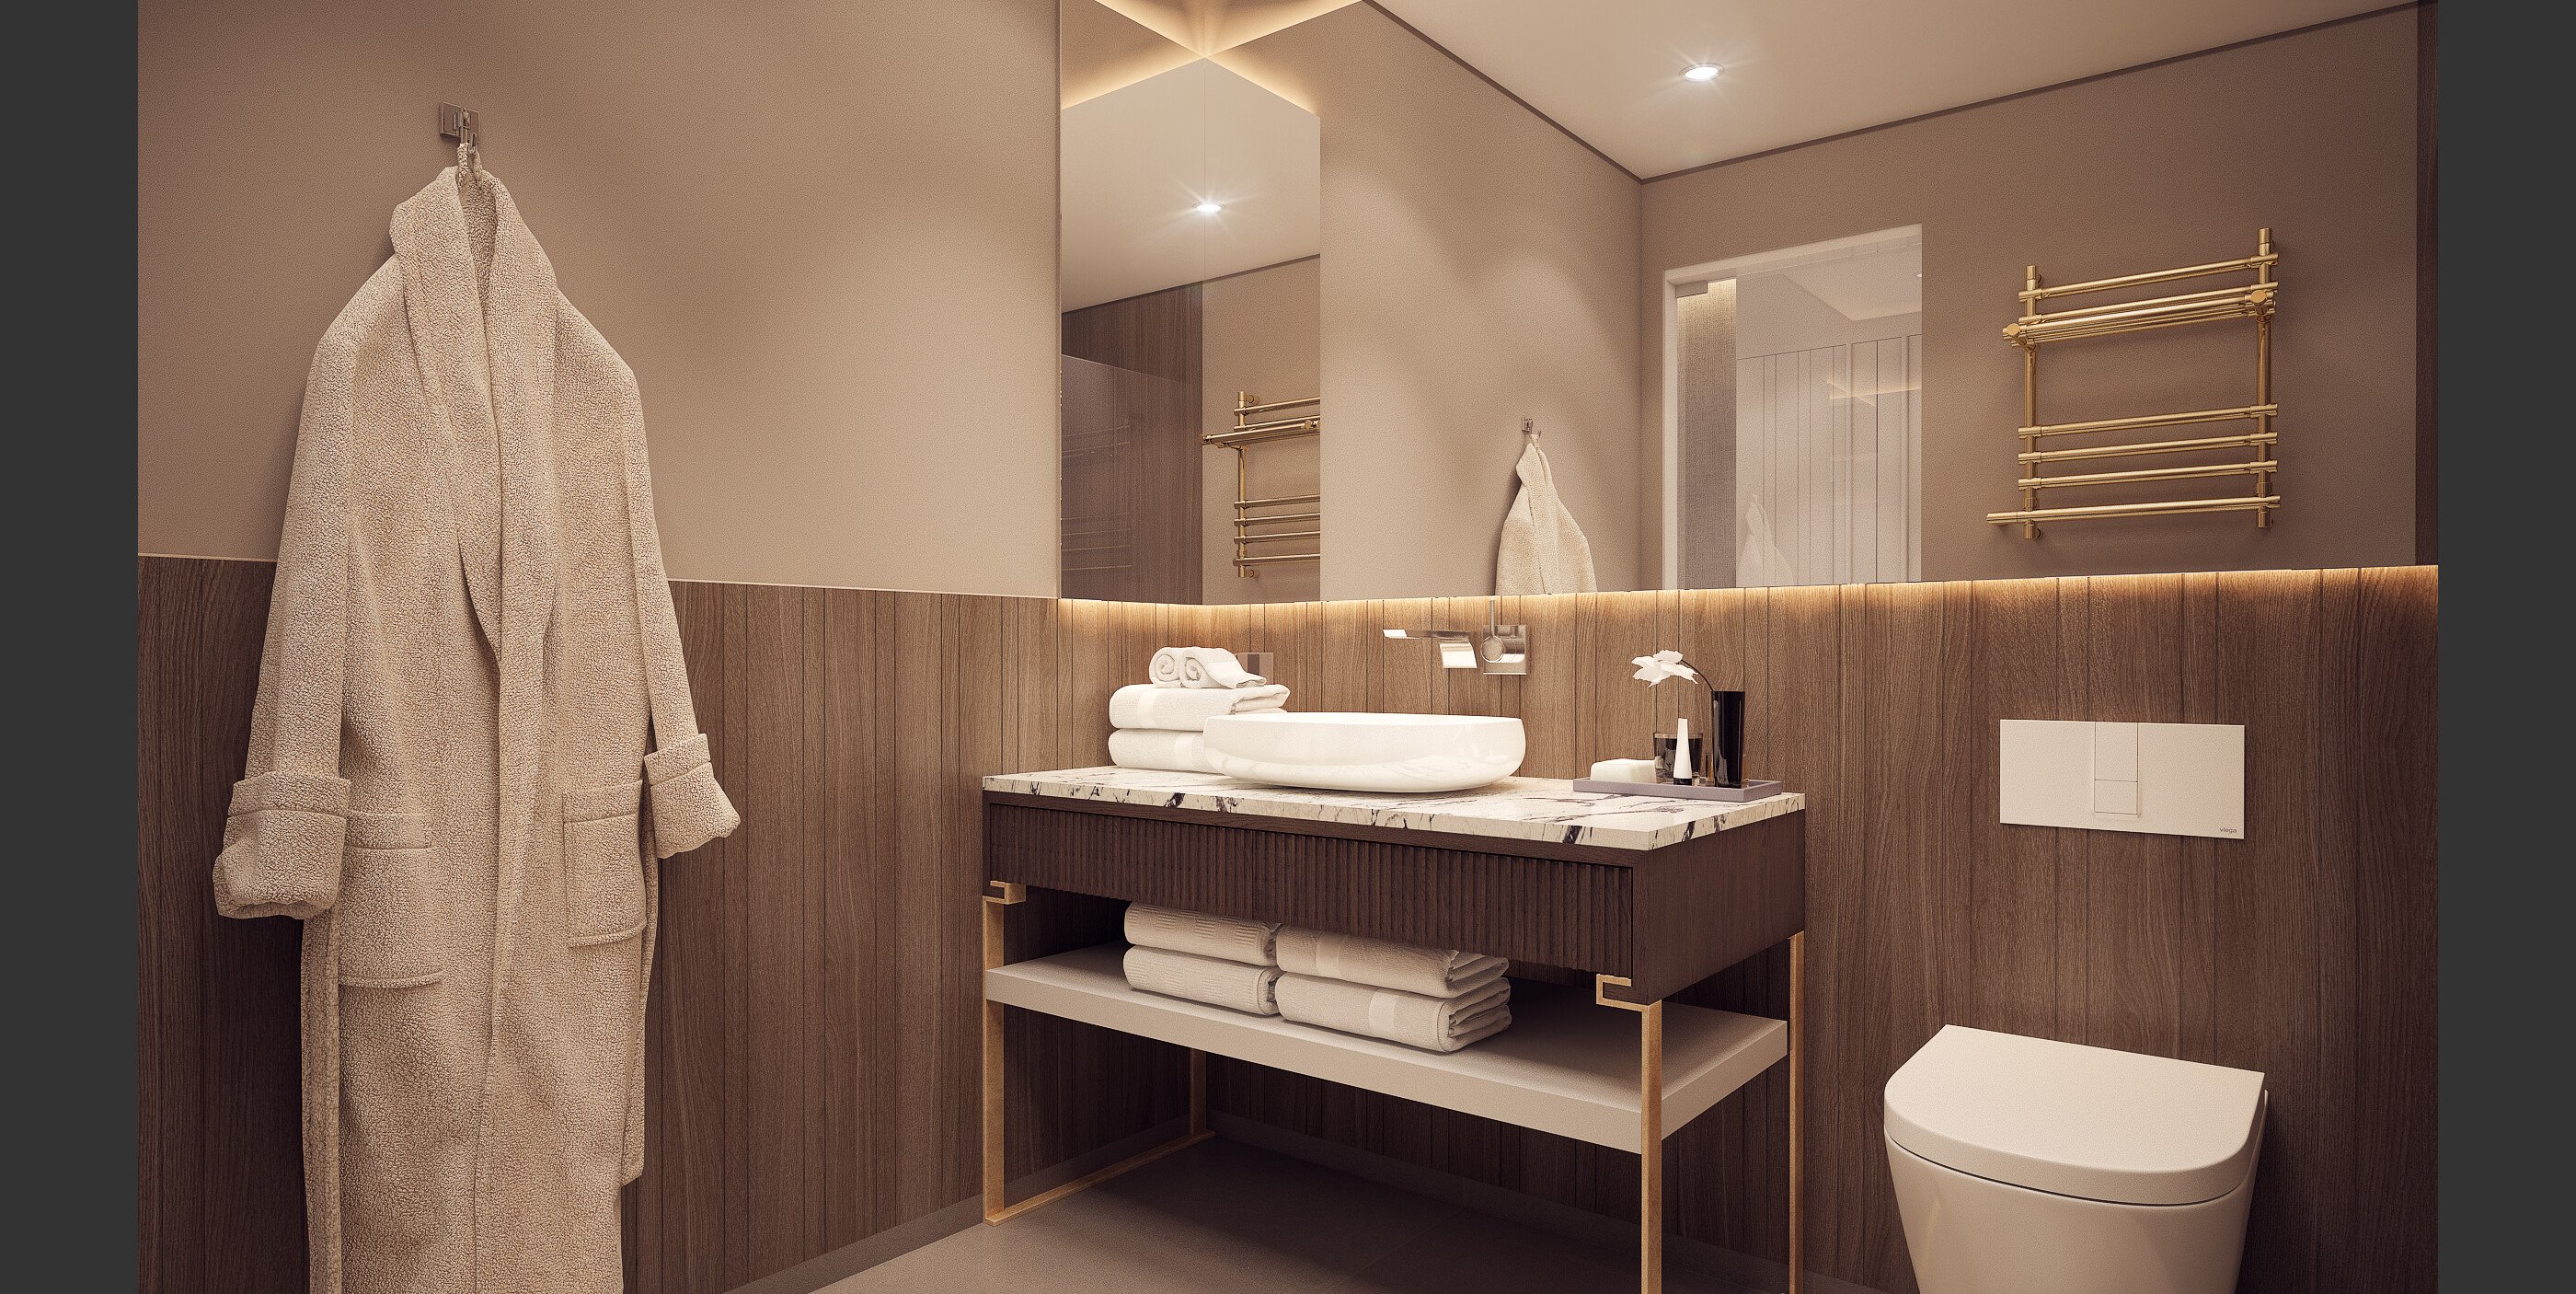 Affordable Online Bathroom Design interior design 2